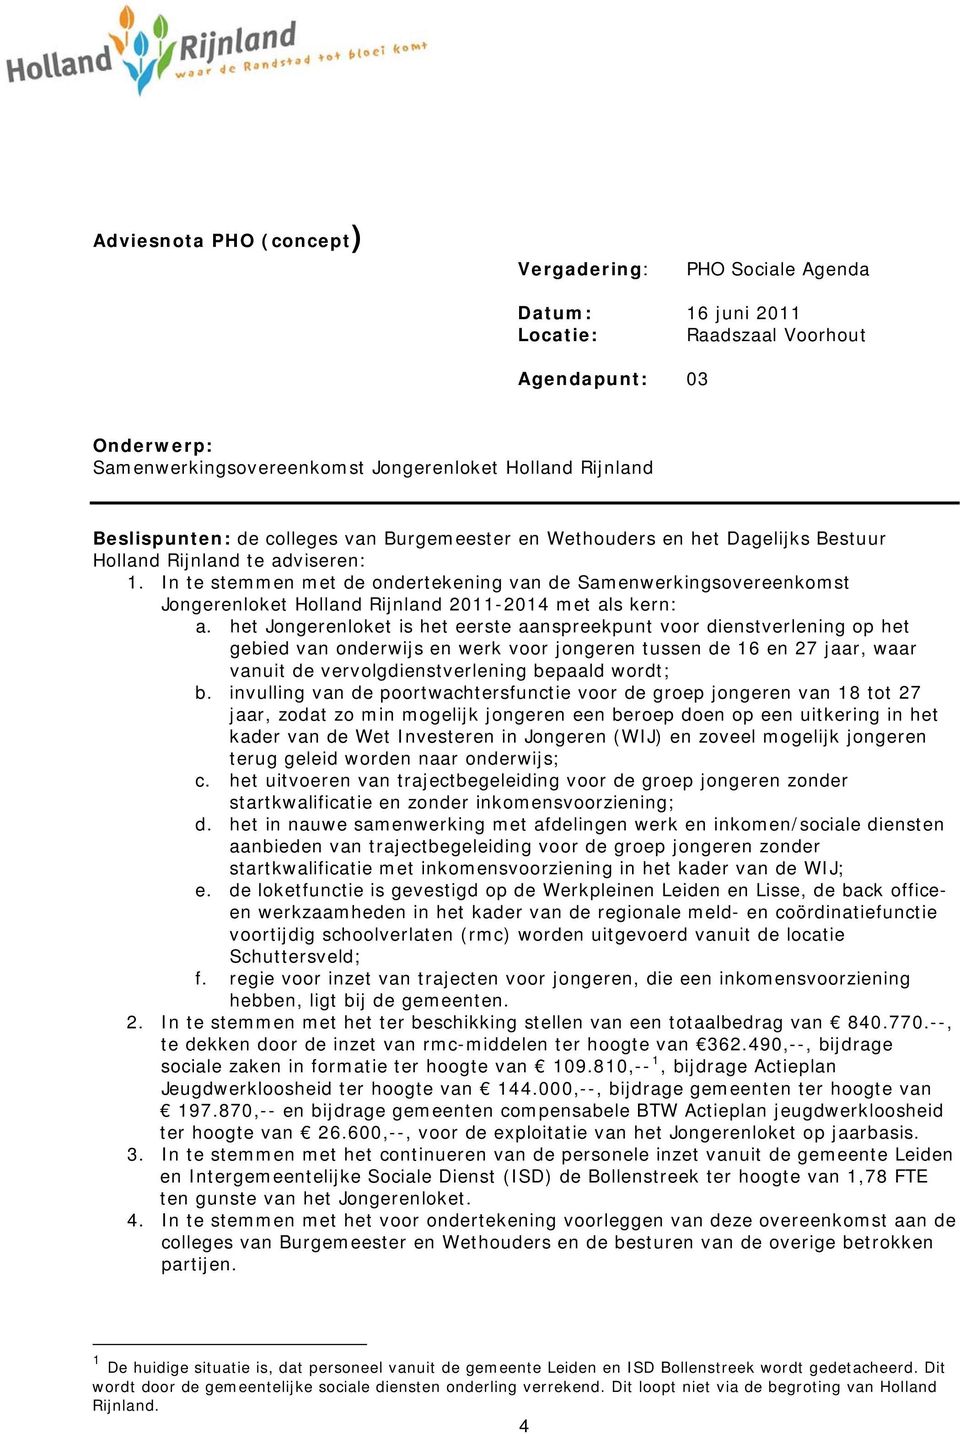 In te stemmen met de ondertekening van de Samenwerkingsovereenkomst Jongerenloket Holland Rijnland 2011-2014 met als kern: a.